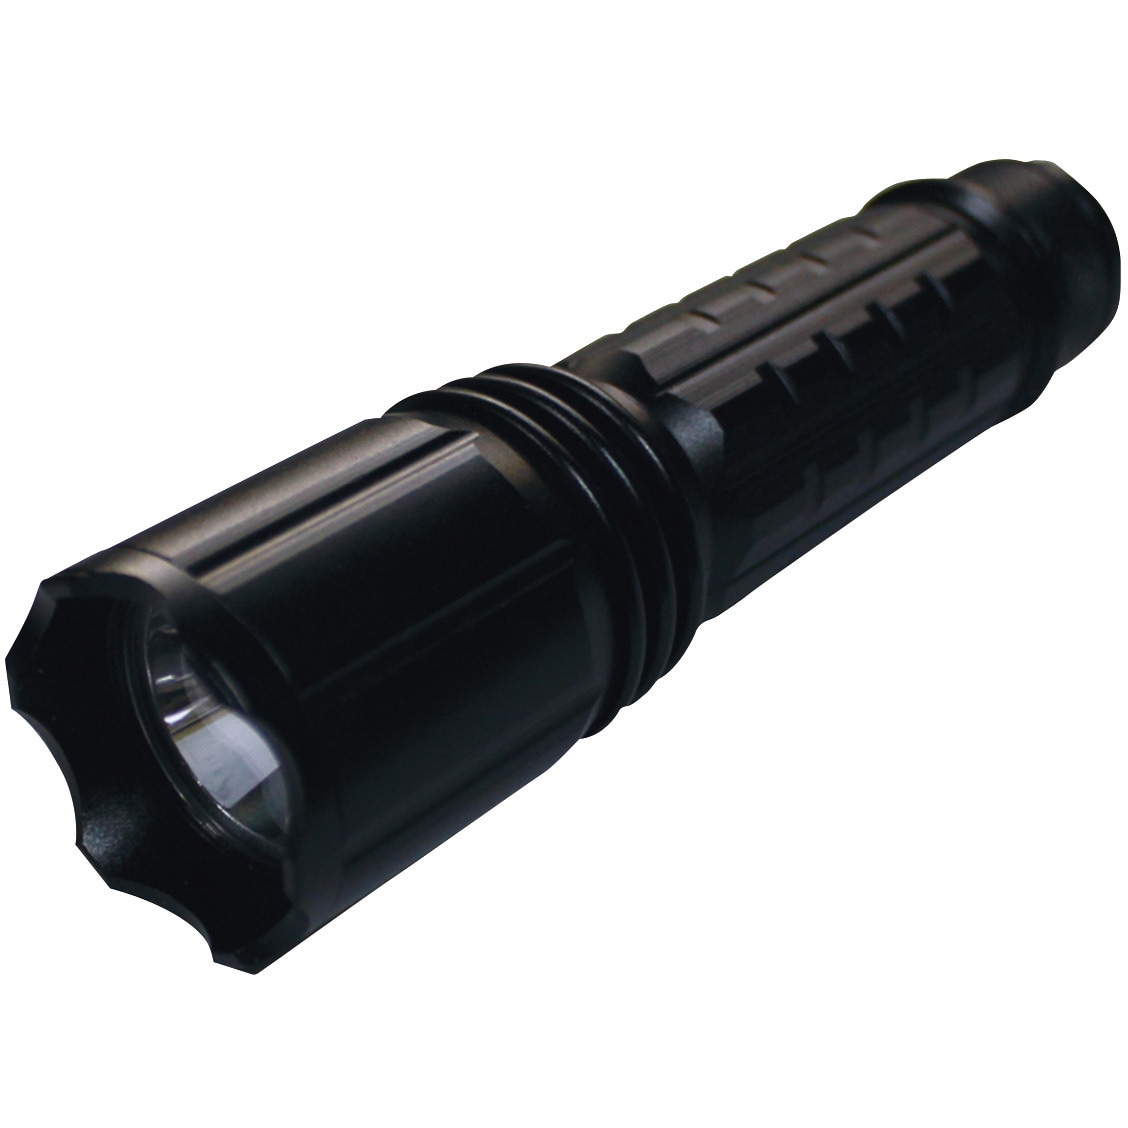 UV-SU405-01W Hydrangea ブラックライト 高出力(ワイド照射) 乾電池タイプ 1個 Hydrangea  【通販サイトMonotaRO】